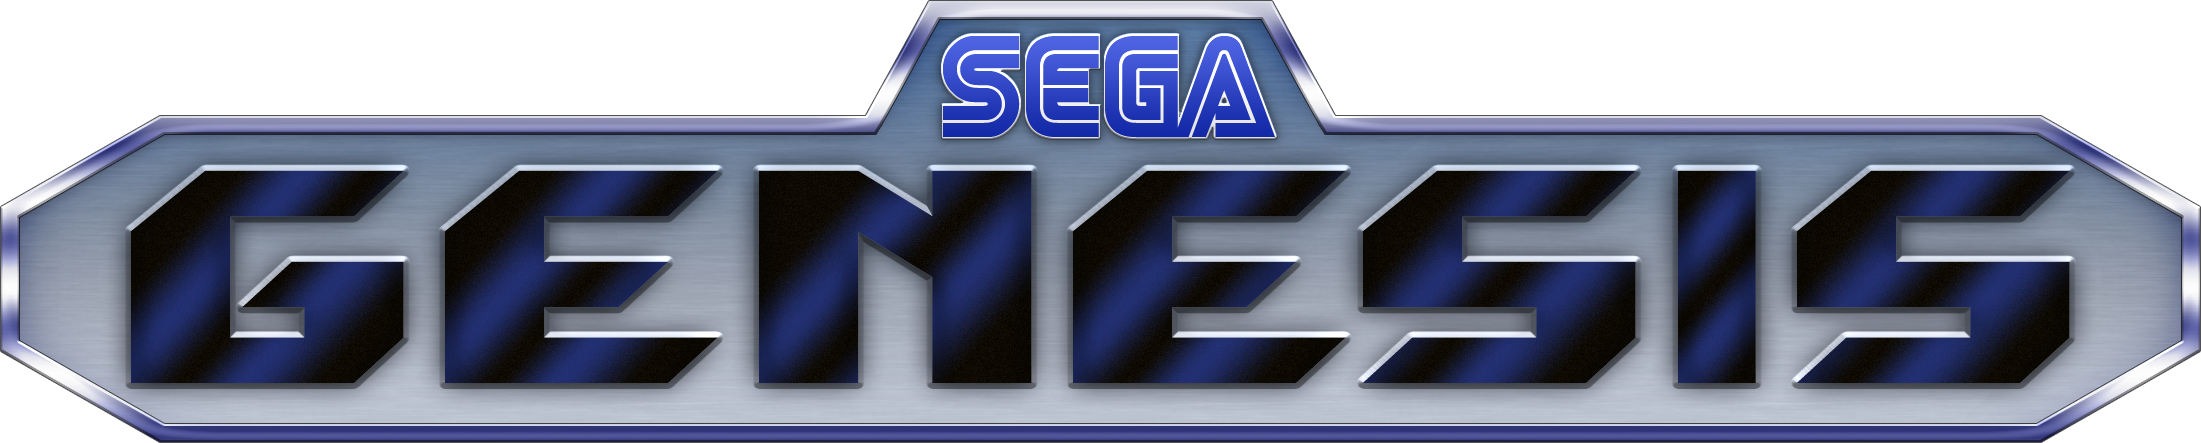 Sega Genesis Logo